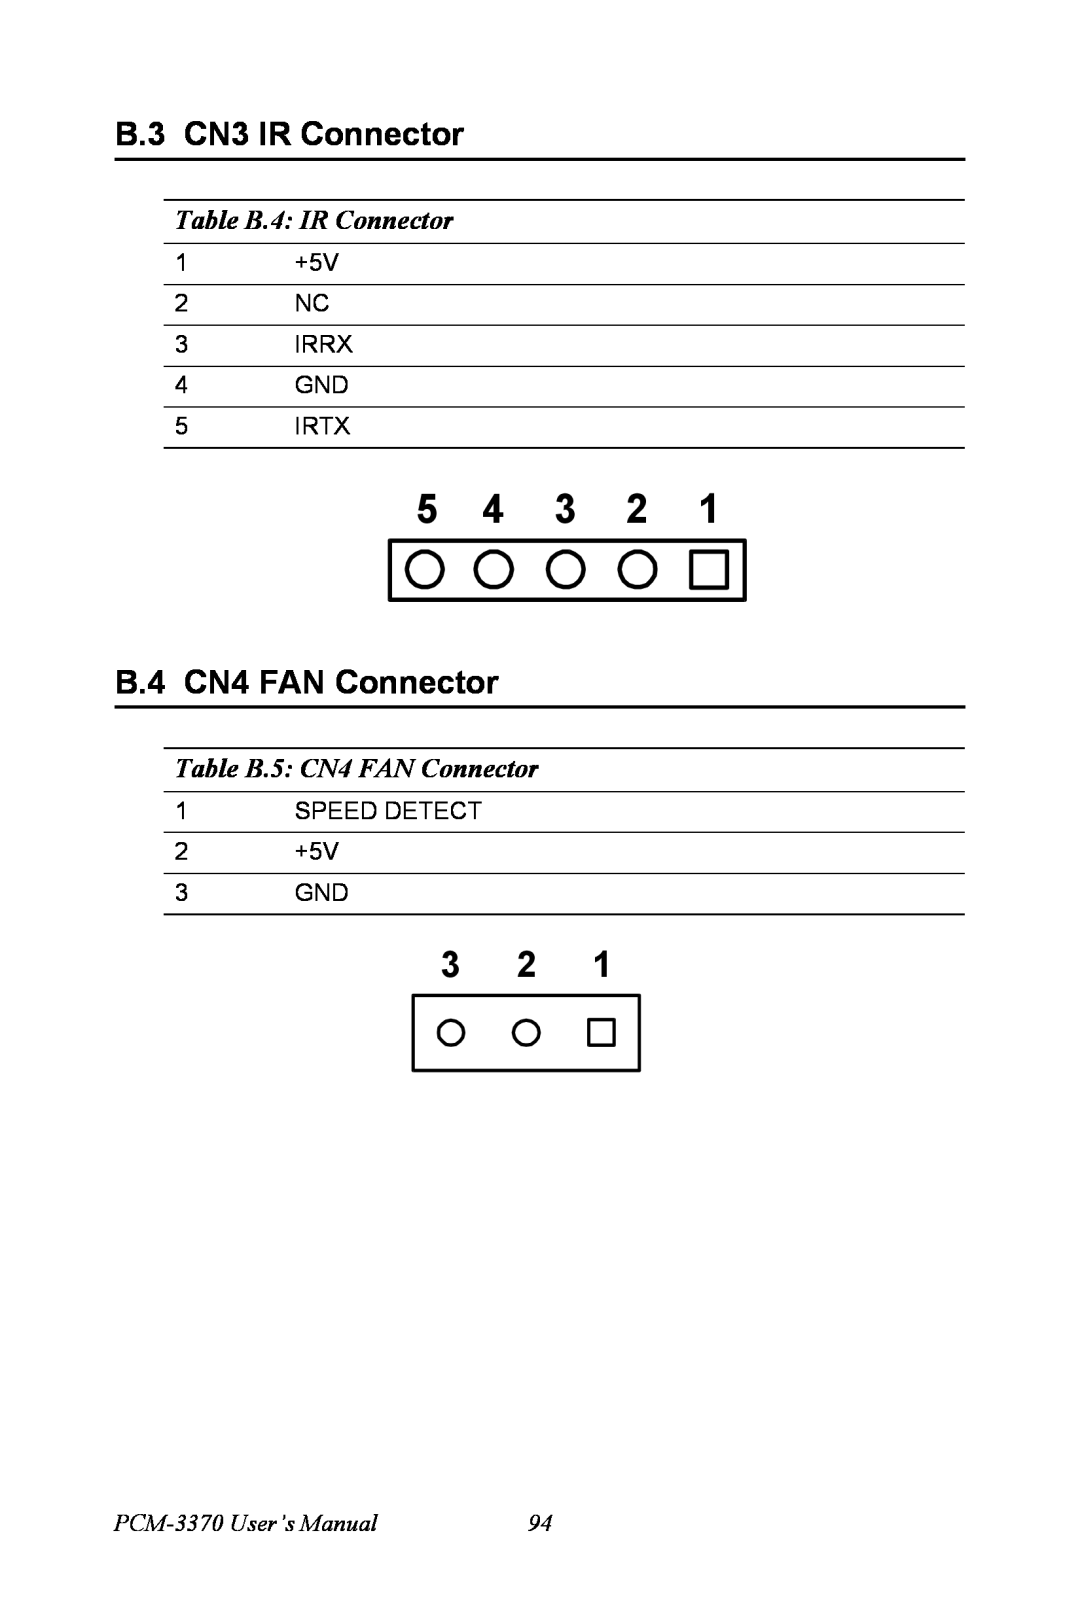 Intel PCM-3370 B.3 CN3 IR Connector, B.4 CN4 FAN Connector, Table B.4 IR Connector, Table B.5 CN4 FAN Connector, 5 4 3 2 